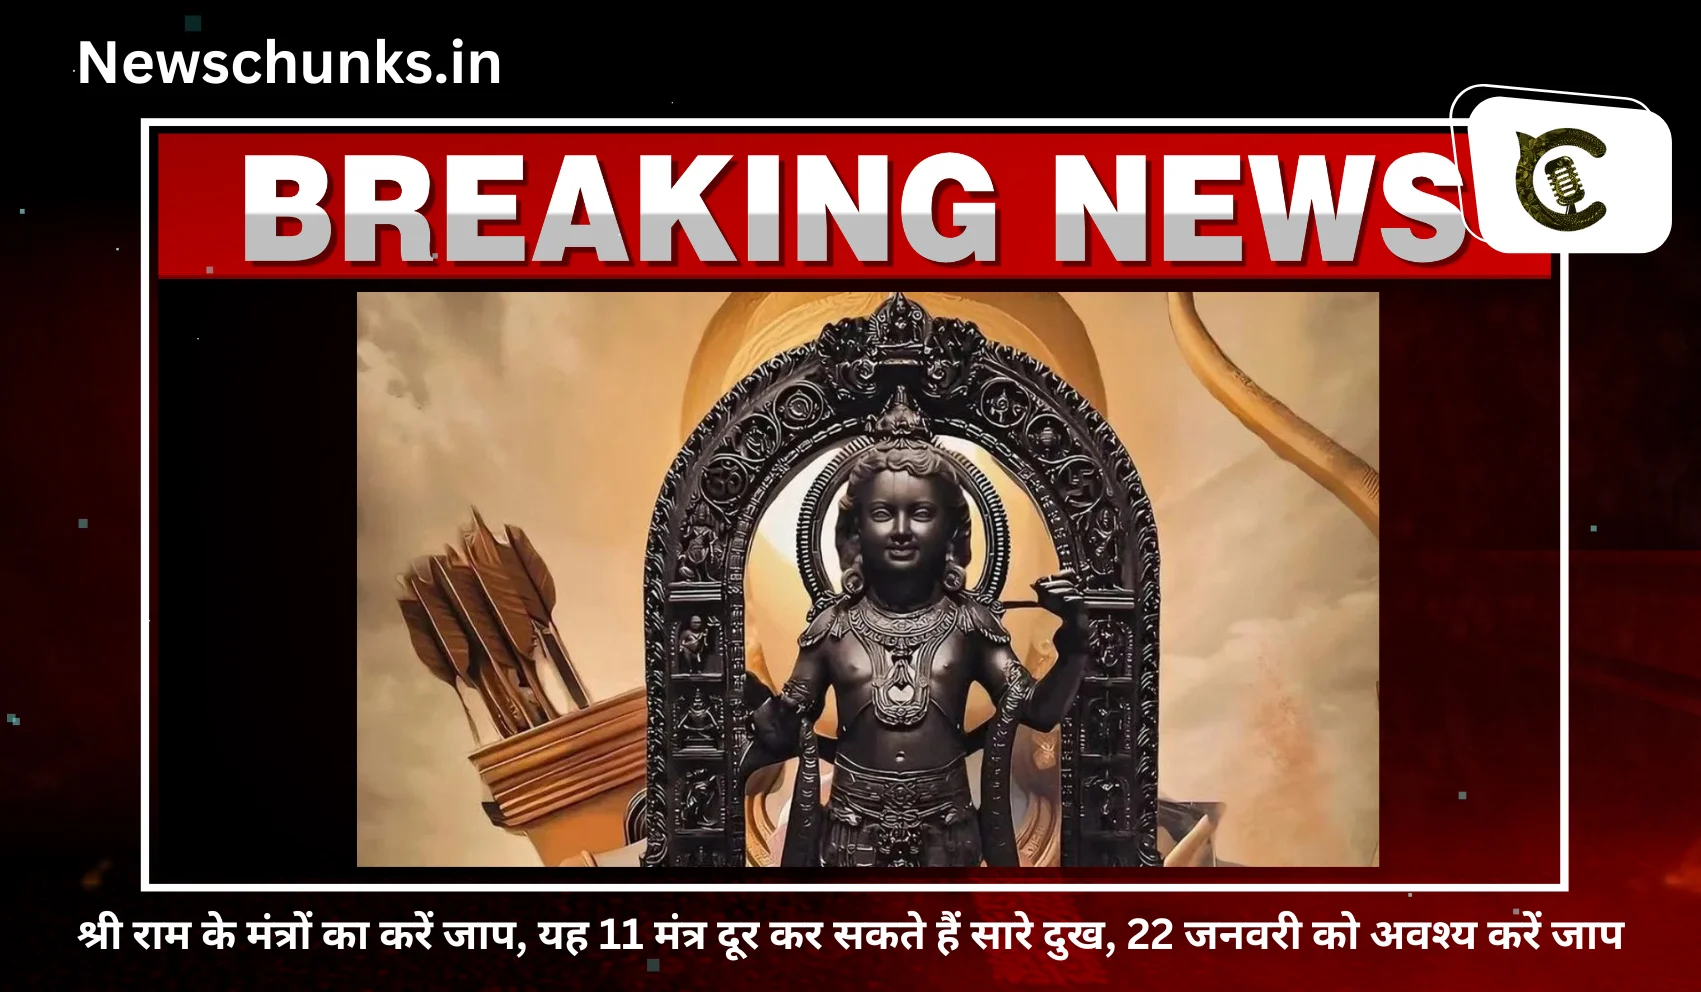 Ram mantra ka jaap: श्री राम के मंत्रों का करें जाप, यह 11 मंत्र दूर कर सकते हैं सारे दुख, 22 जनवरी को अवश्य करें जाप